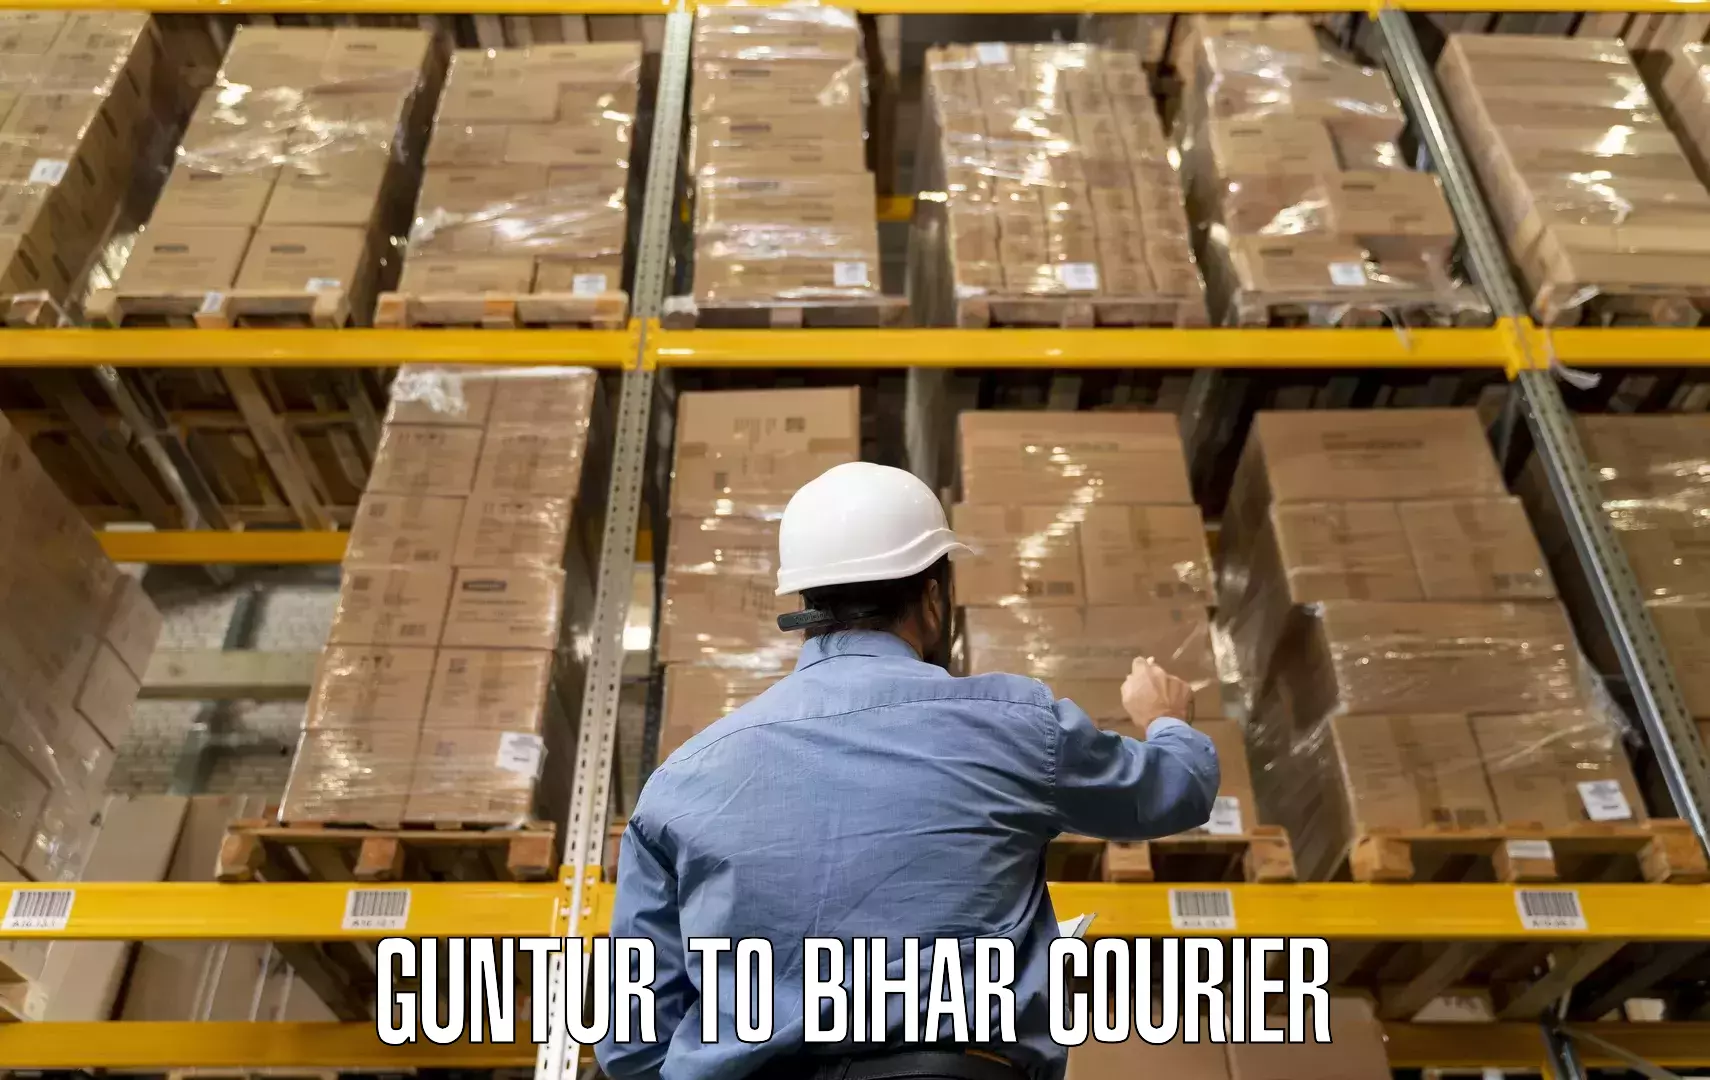 Household goods transporters Guntur to Madhepura